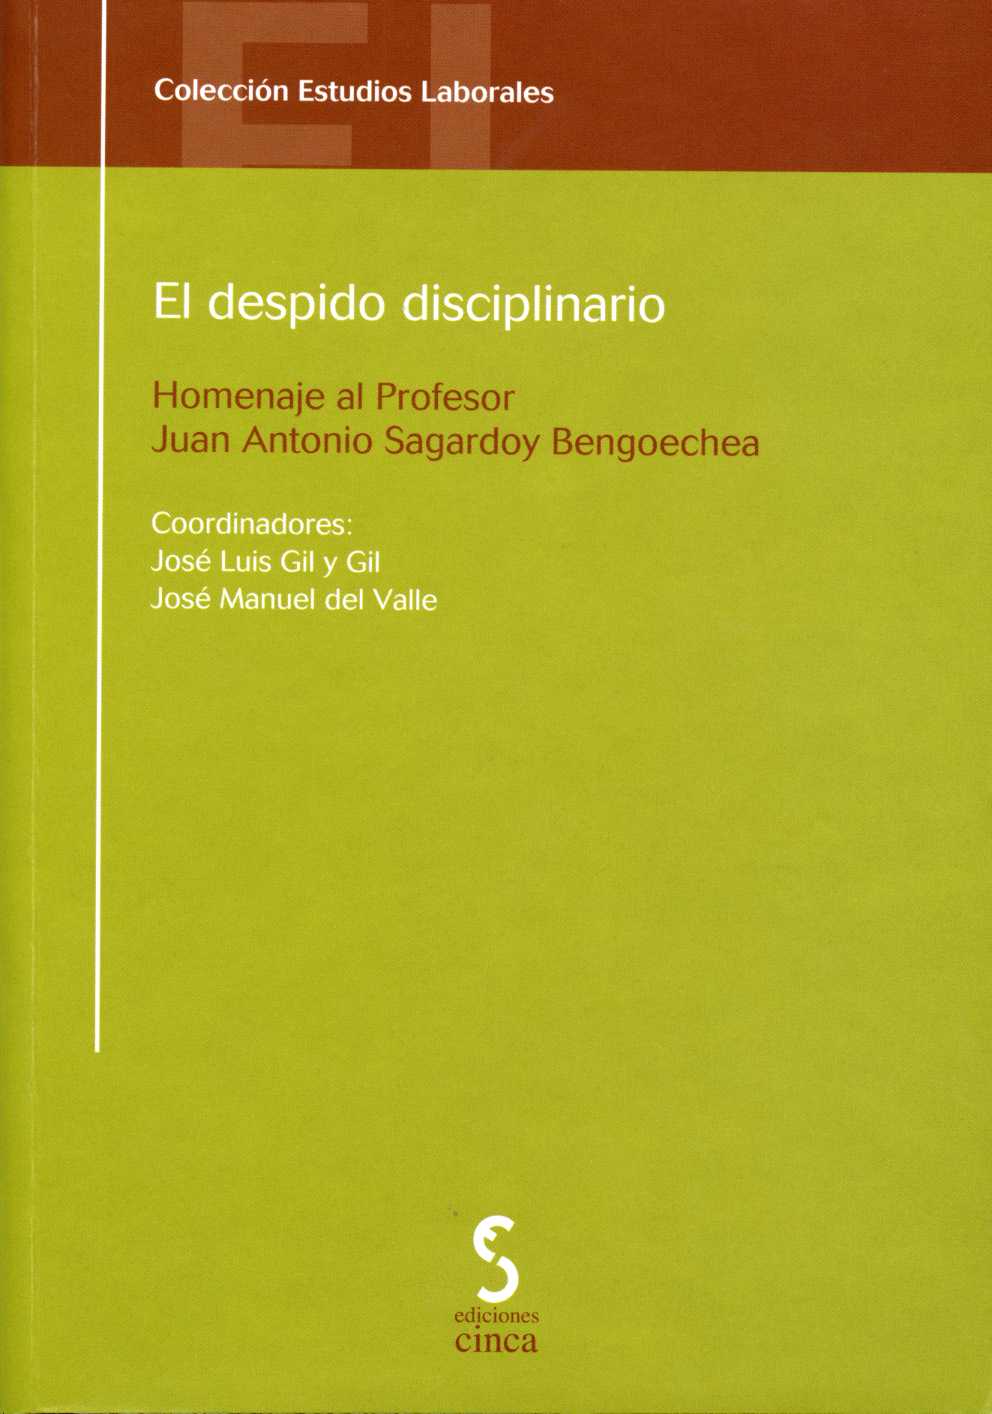 Despido Disciplinario, El. Homenaje al Profesor Juan Antonio Sagardoy Bengoechea.-0